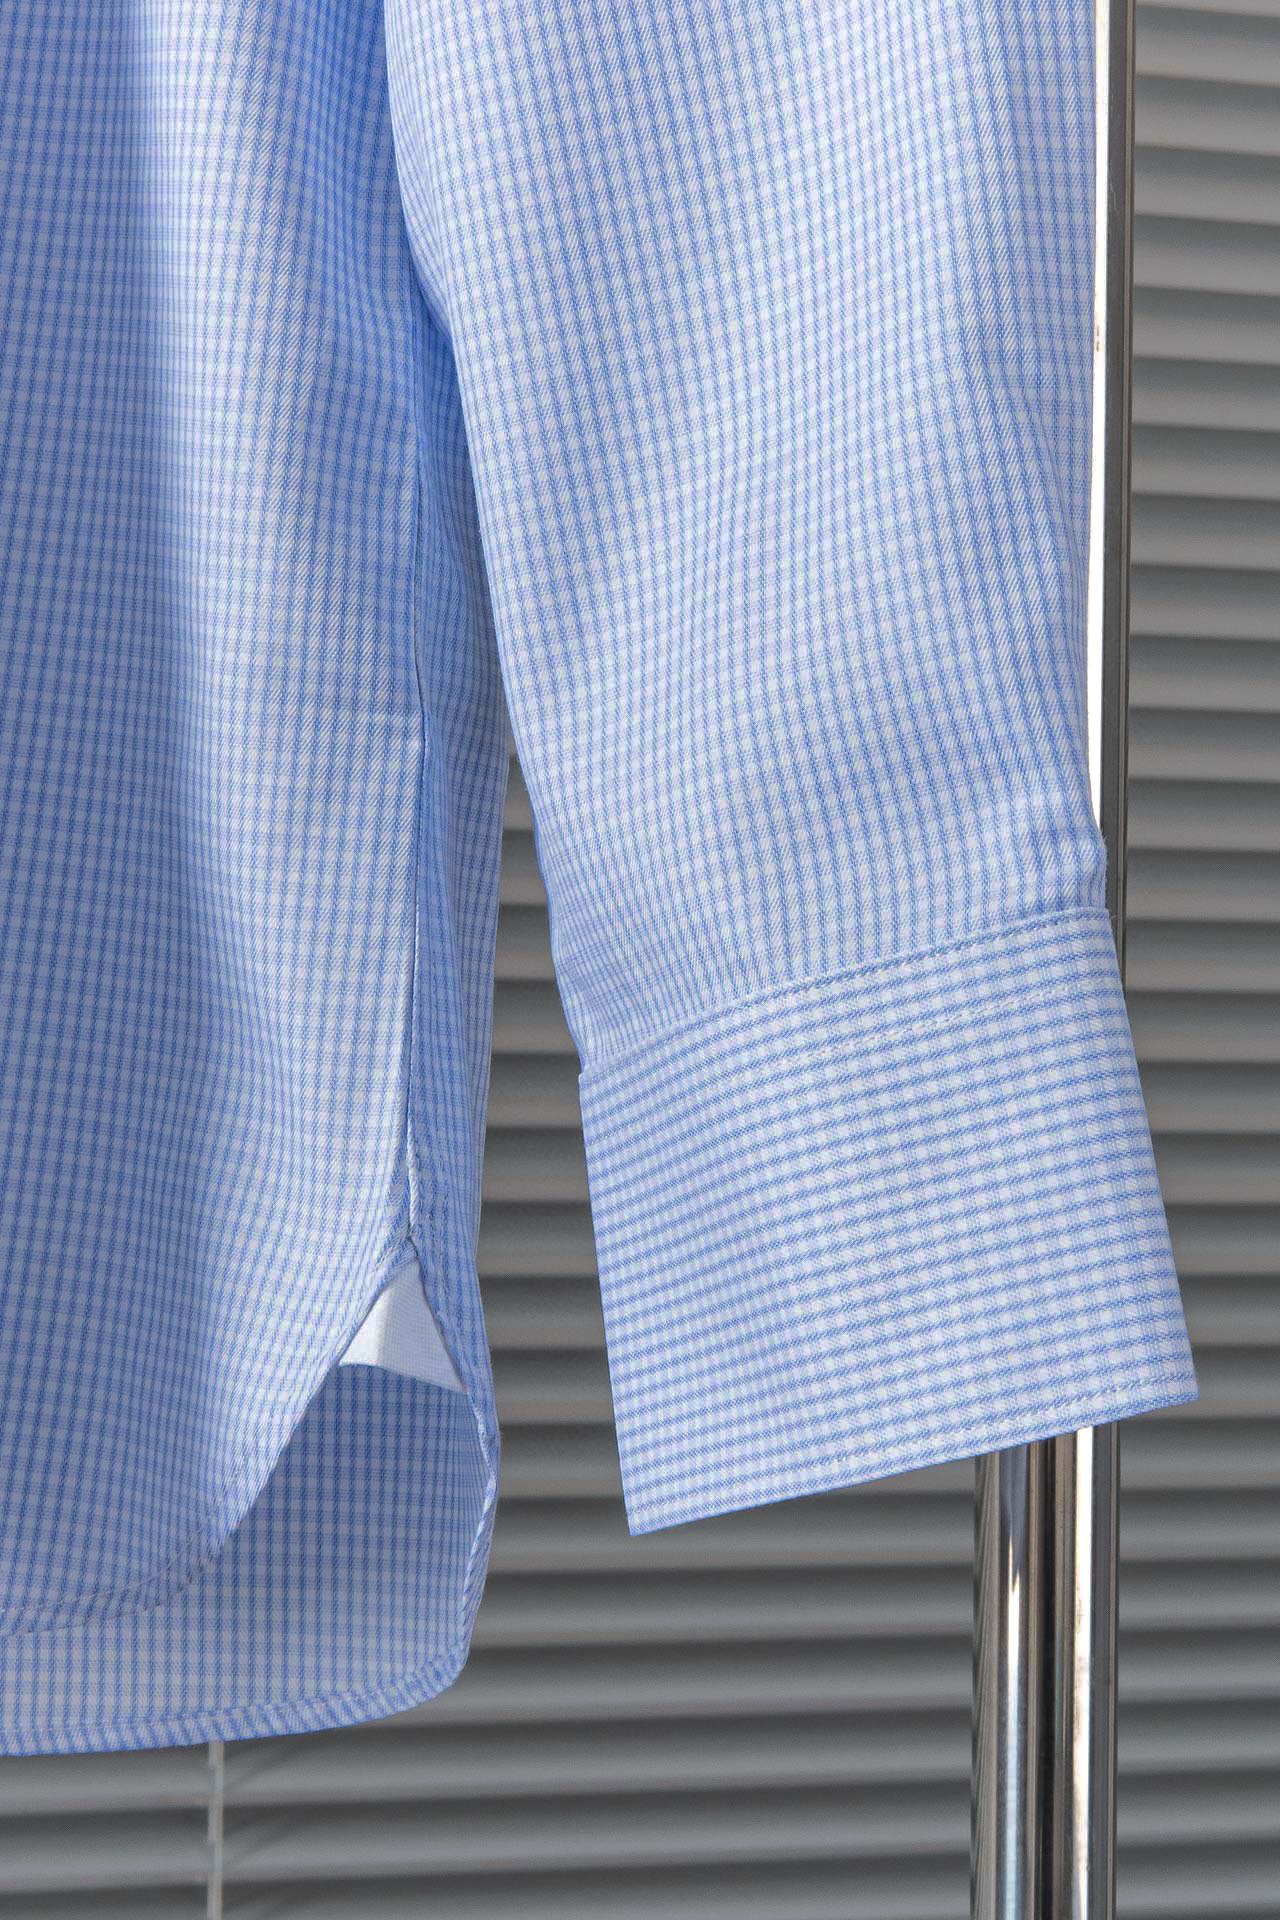 New#杰尼亚ZEGNA高品质的珍藏级进口高织棉男士条纹长袖衬衫!24春夏新款高品质的奢品者首推珍藏级长